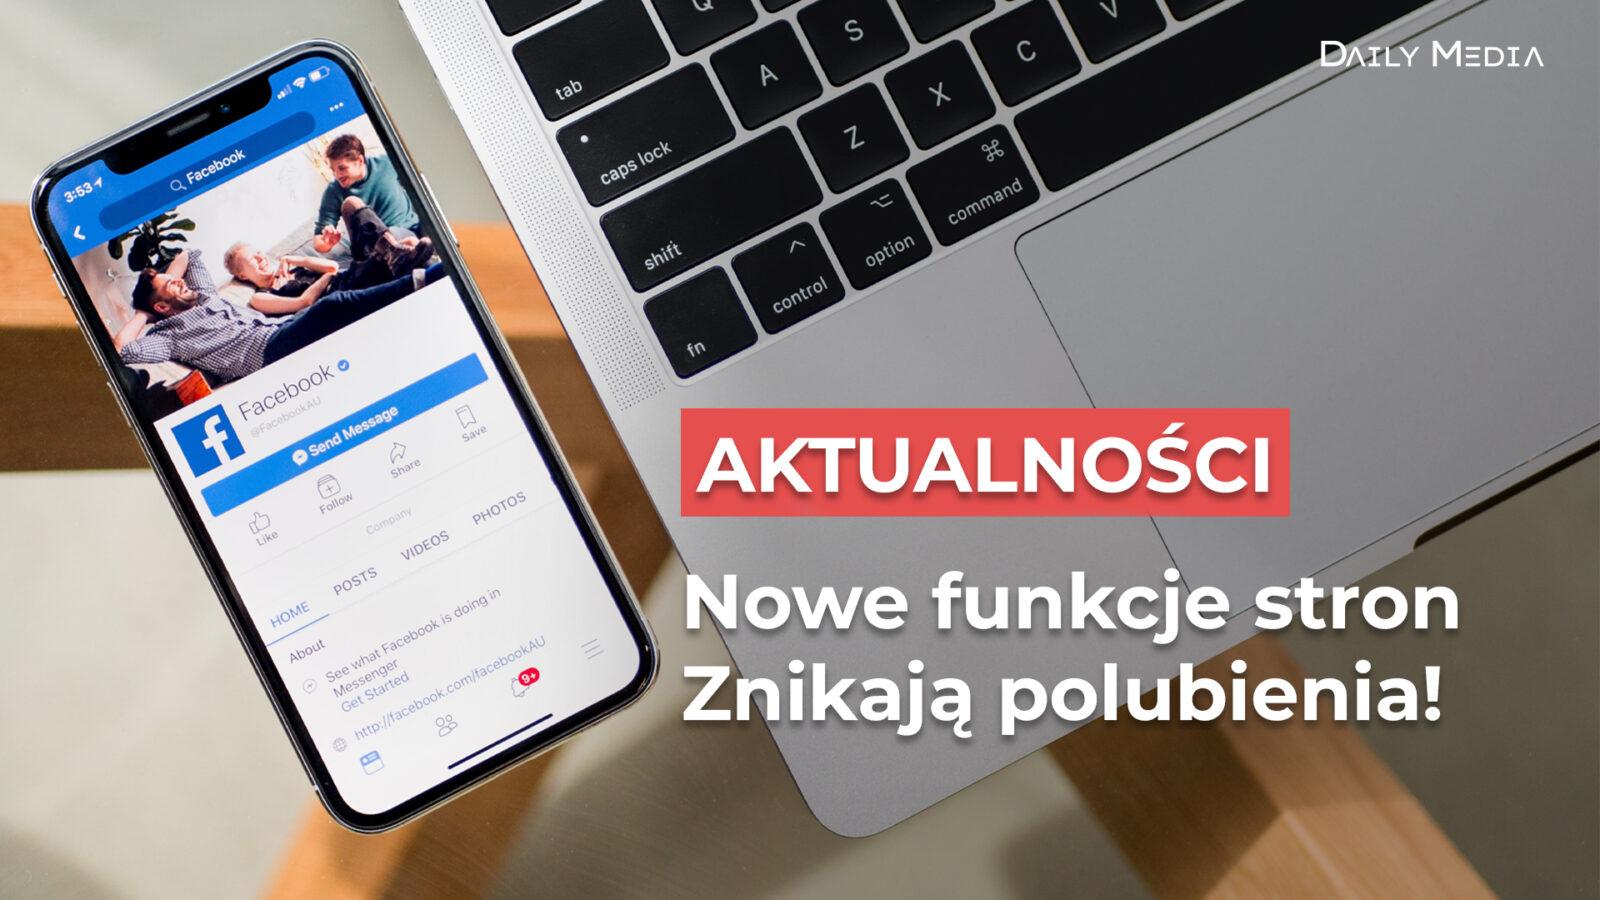 Facebook - Nowe funkcje stron - Znikają polubienia!